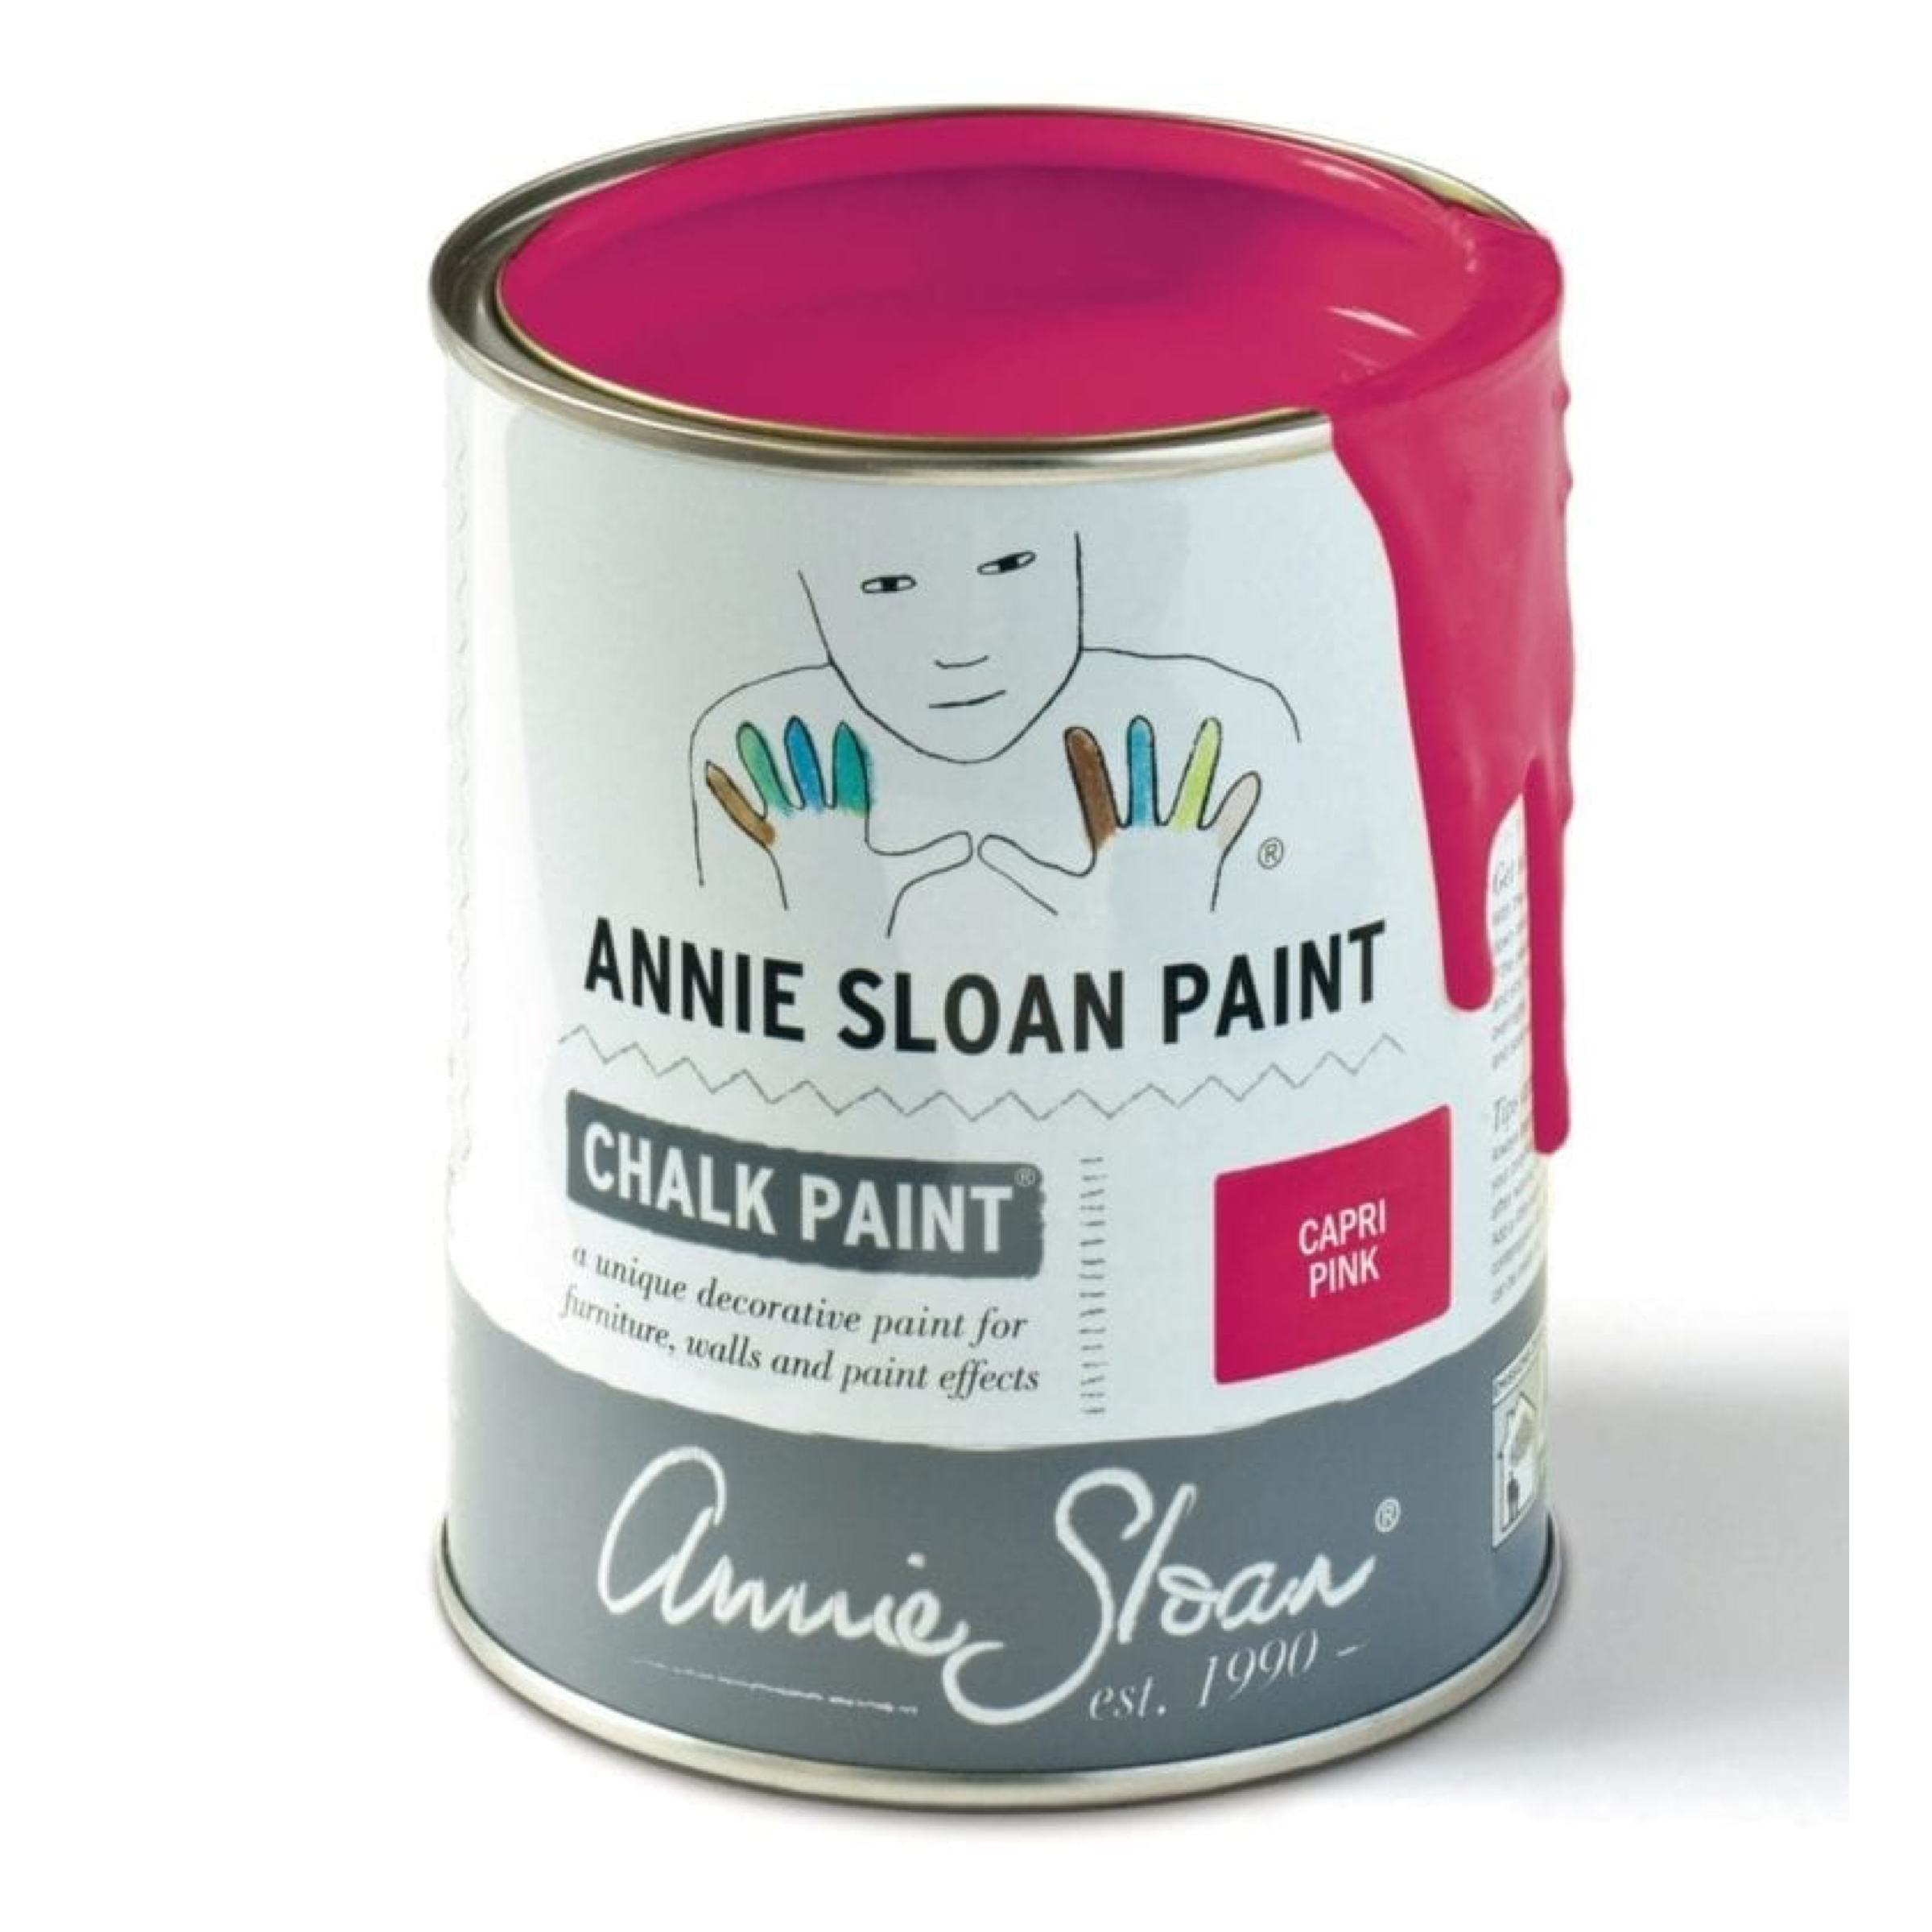 Annie Sloan Capri Pink Chalk Paint - 1 Litre Tin 